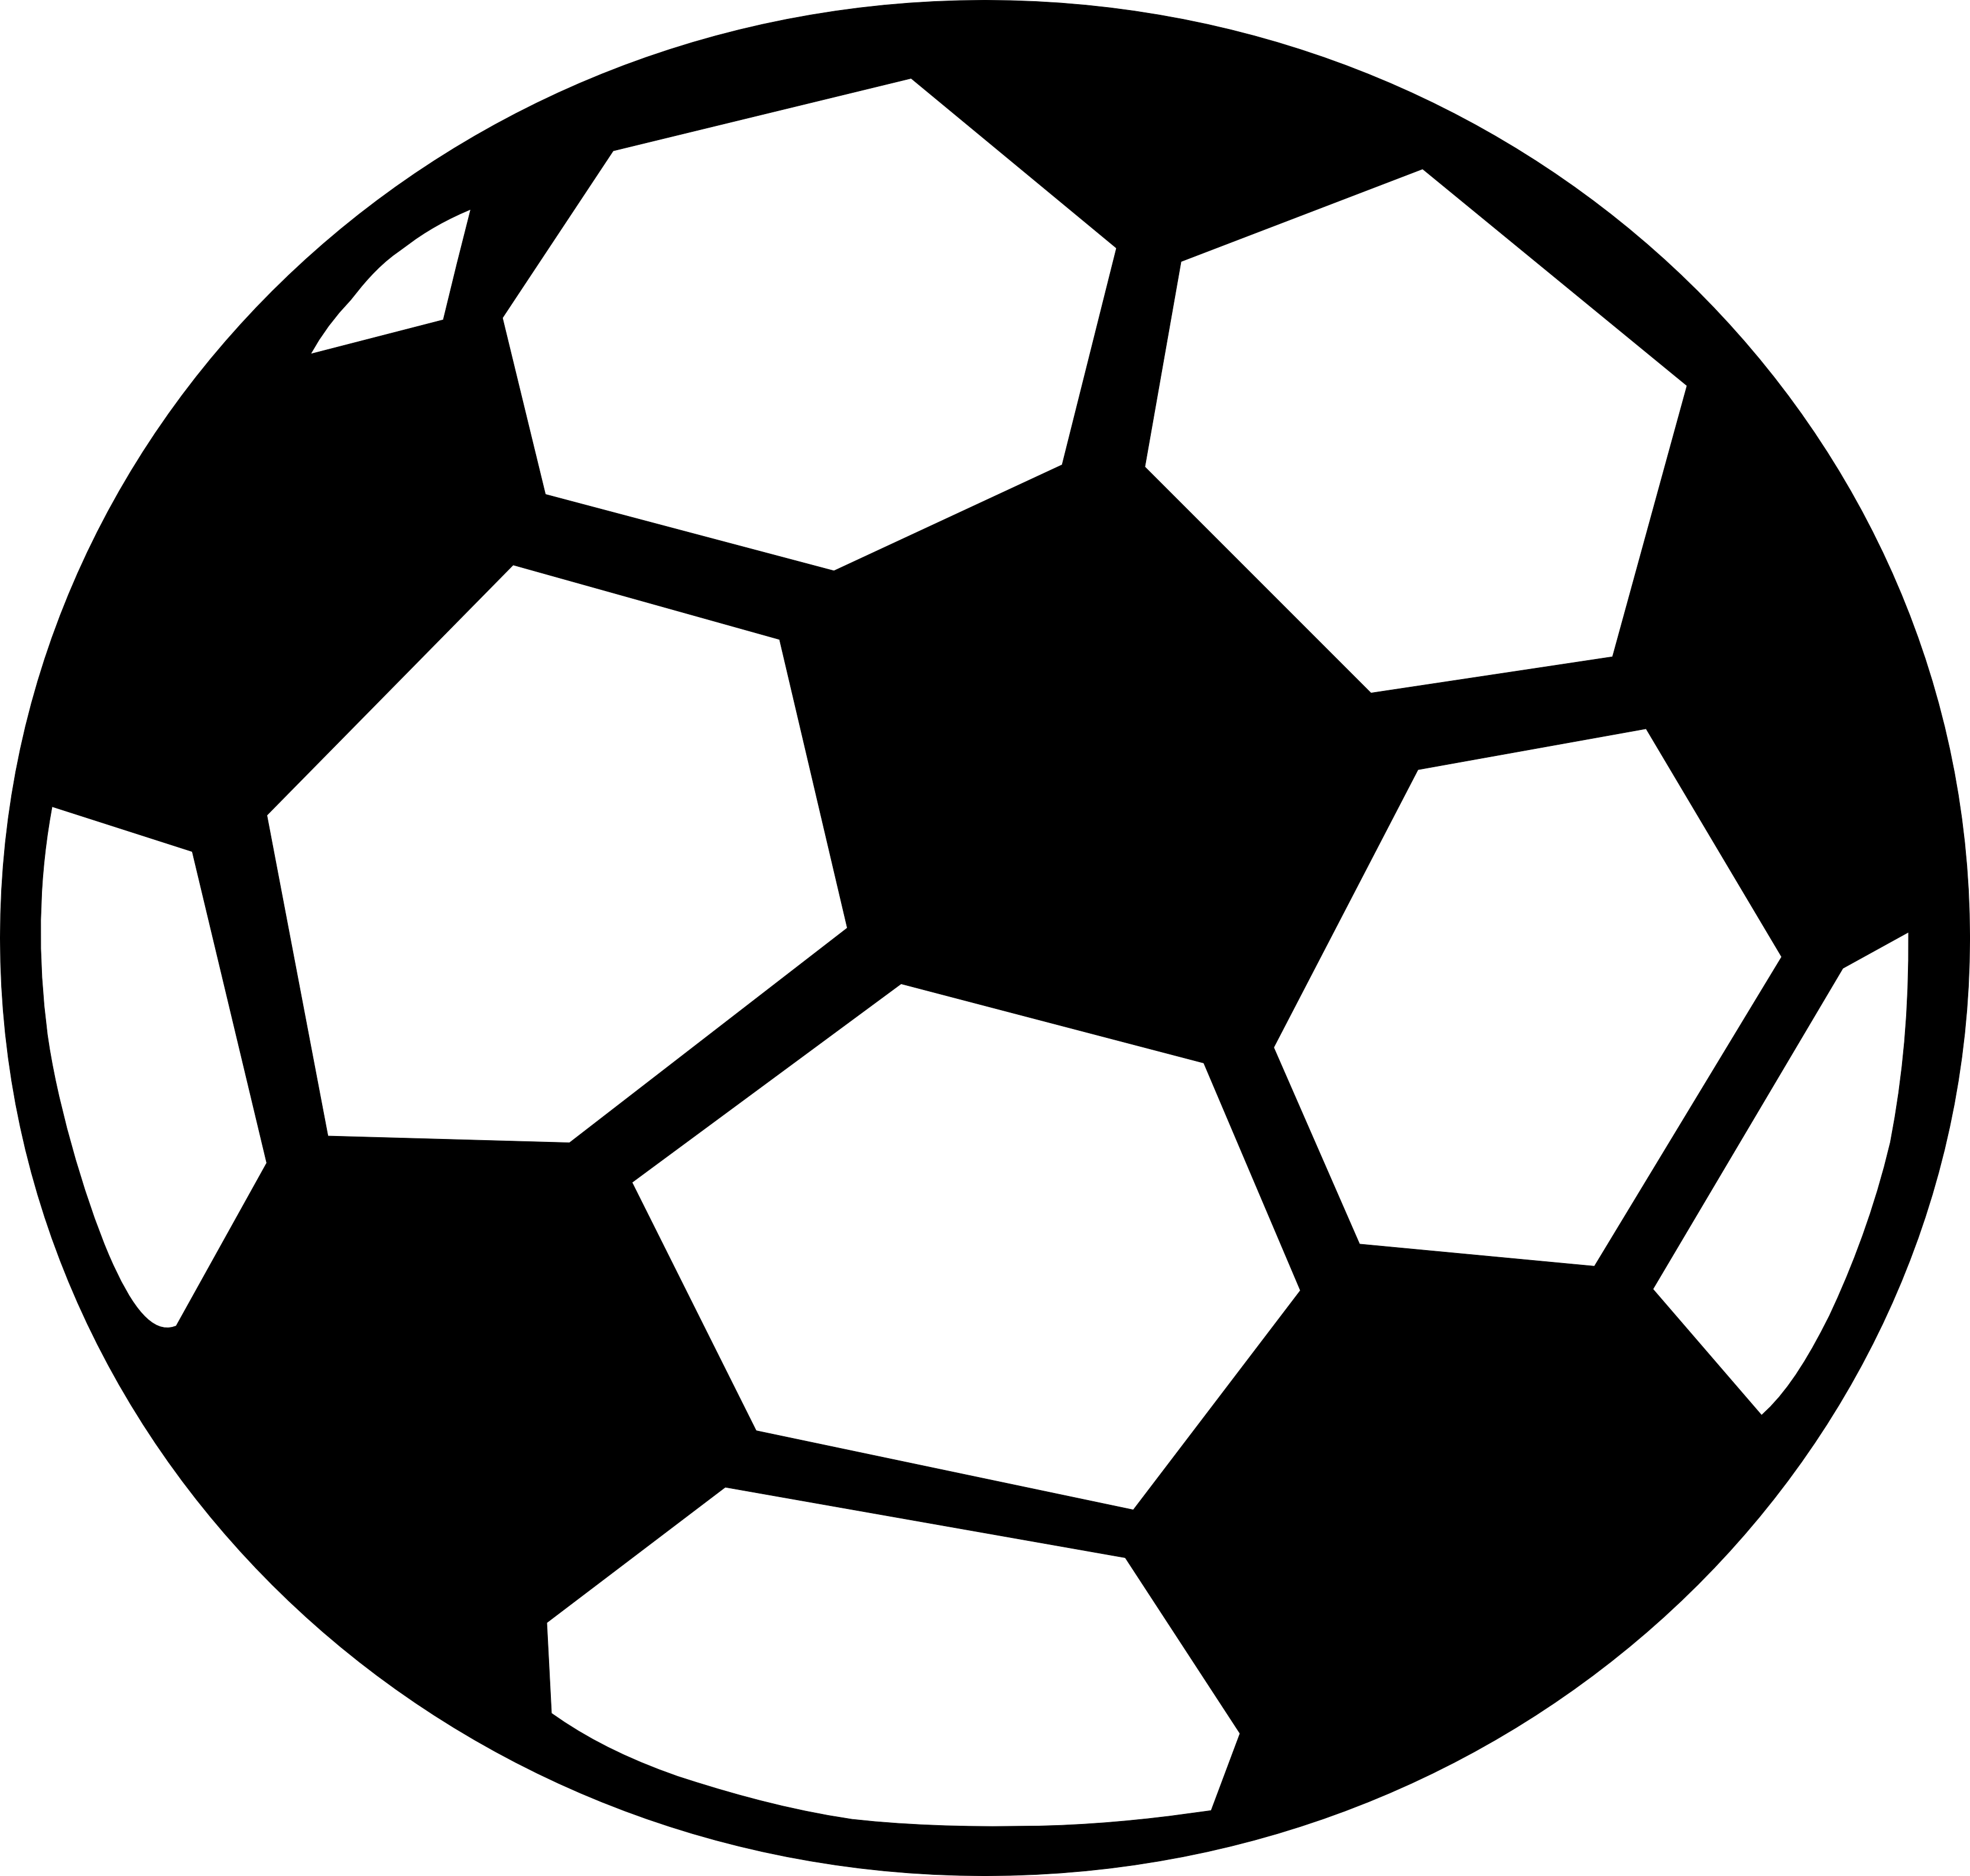 Black And White Soccer Ball Clip Art - ClipArt Best